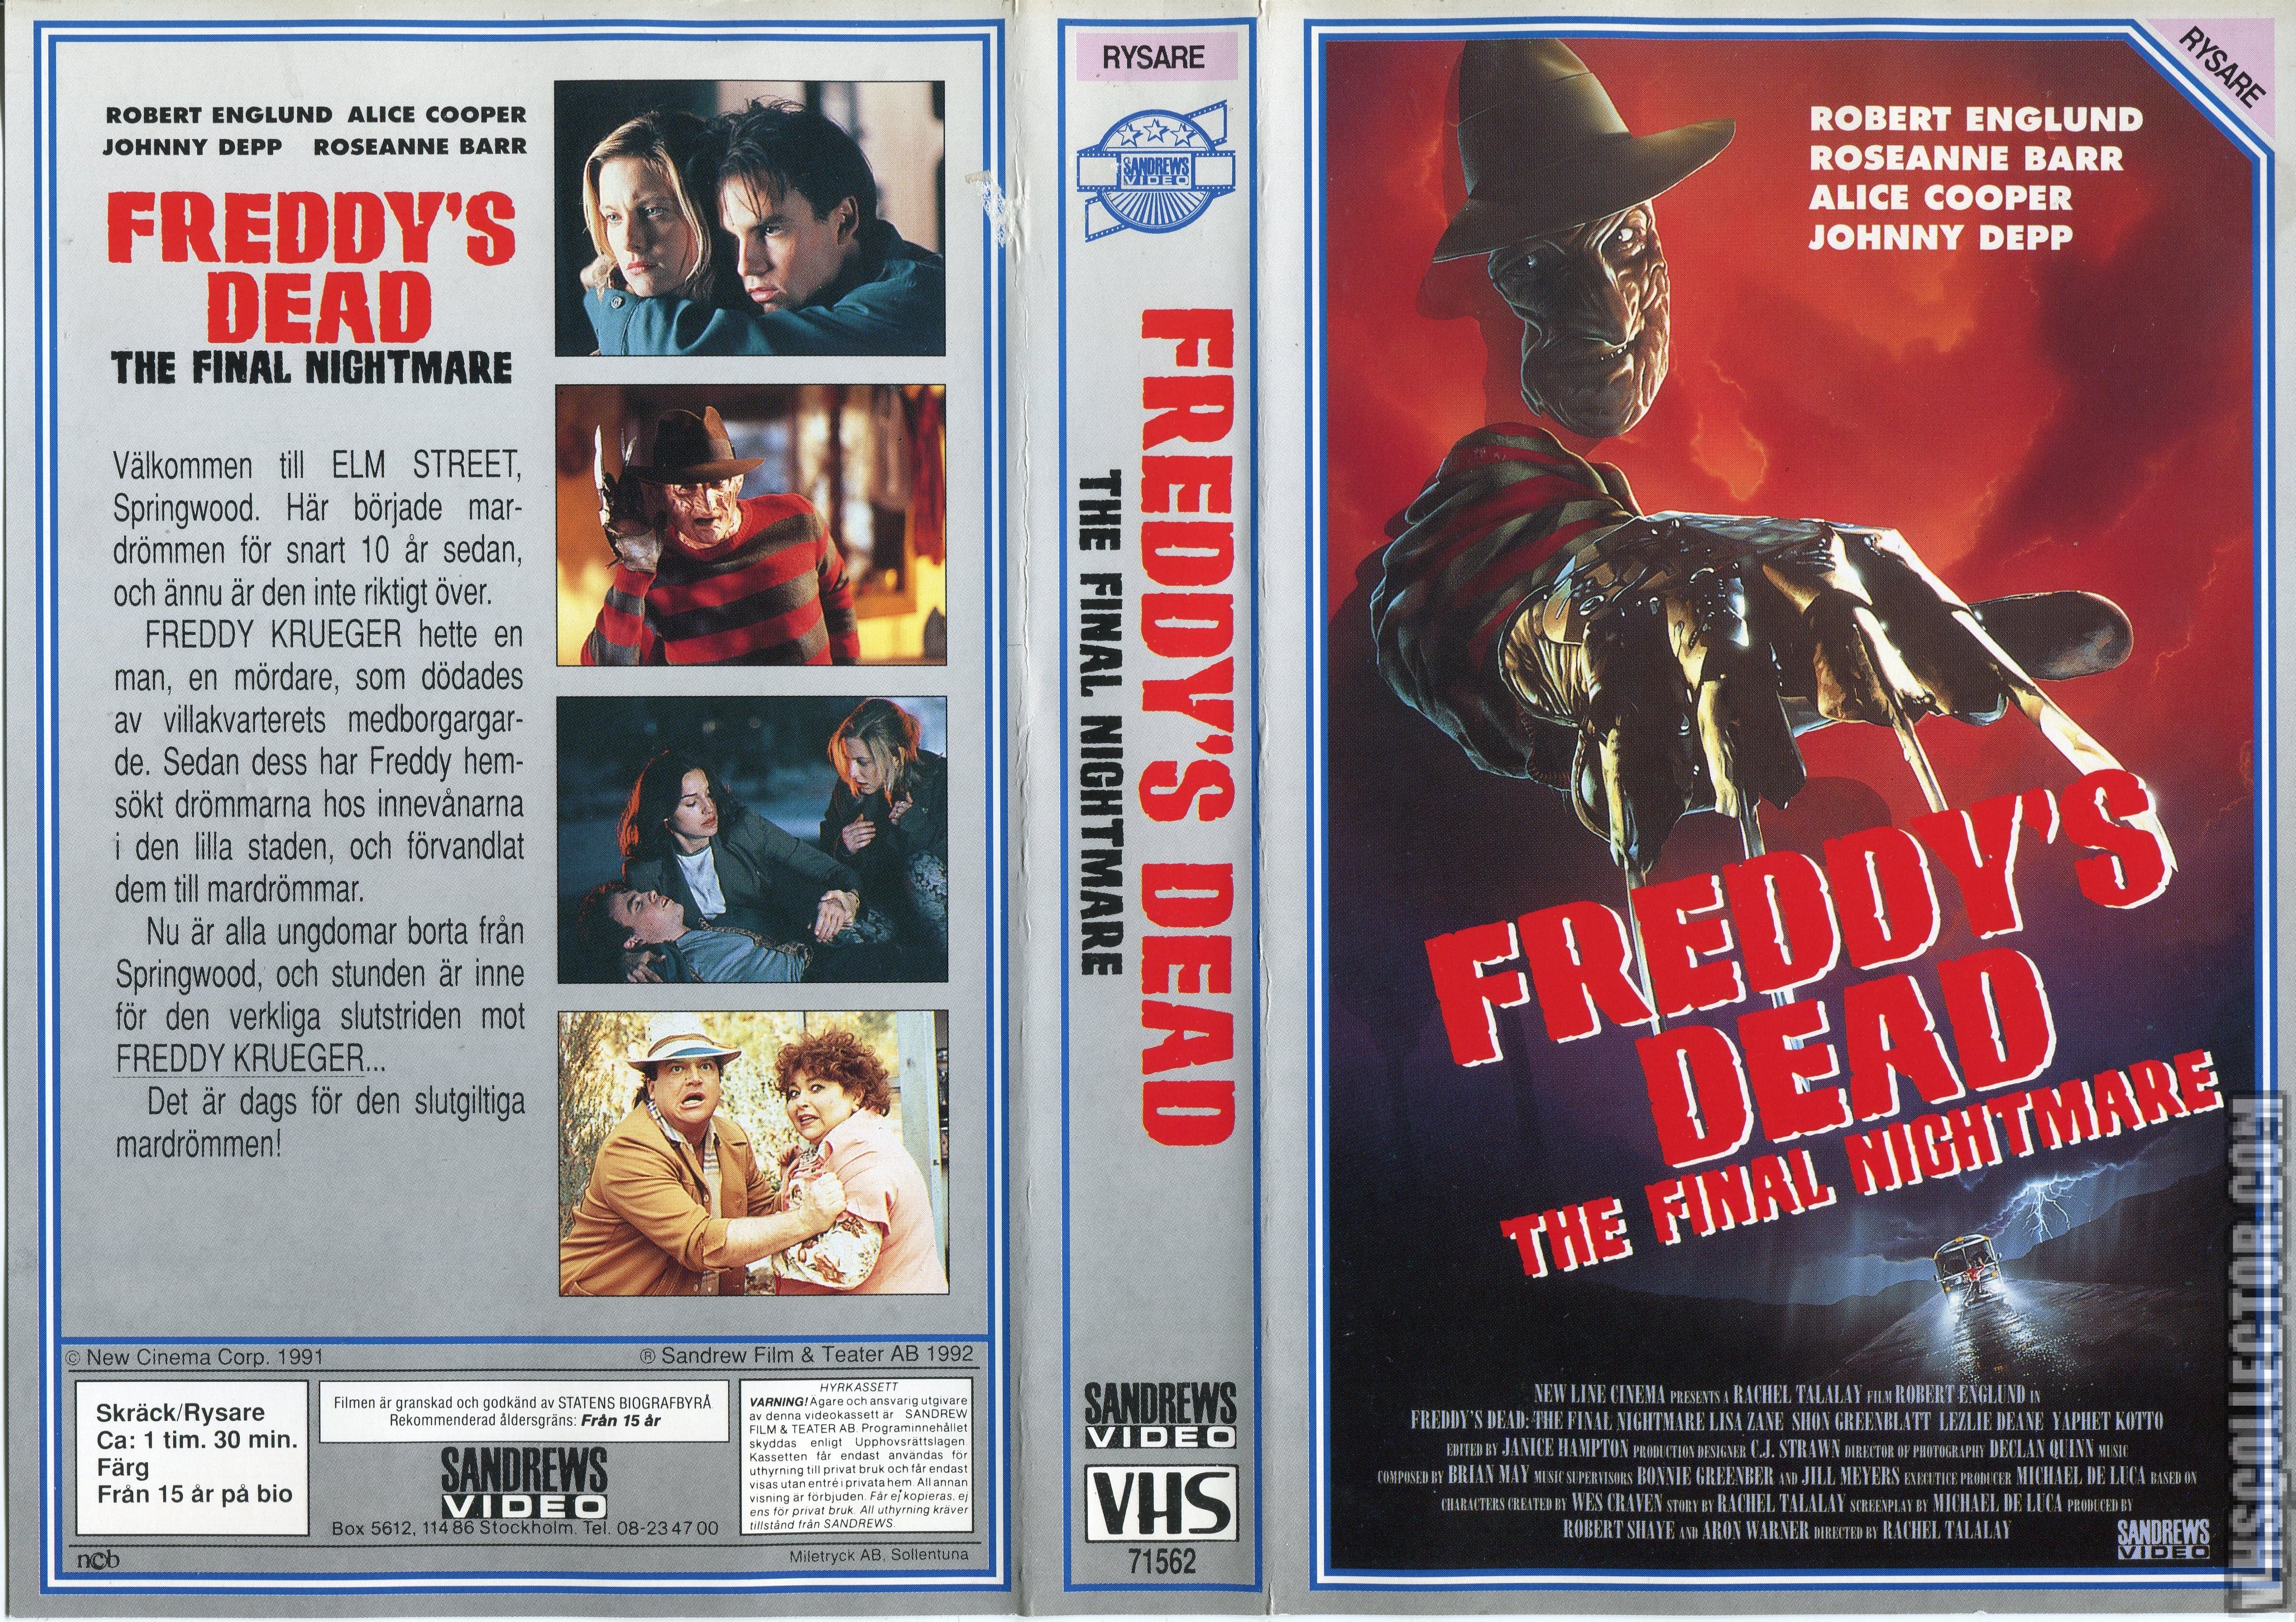 FREDDY'S DEAD: THE FINAL NIGHTMARE (1991)